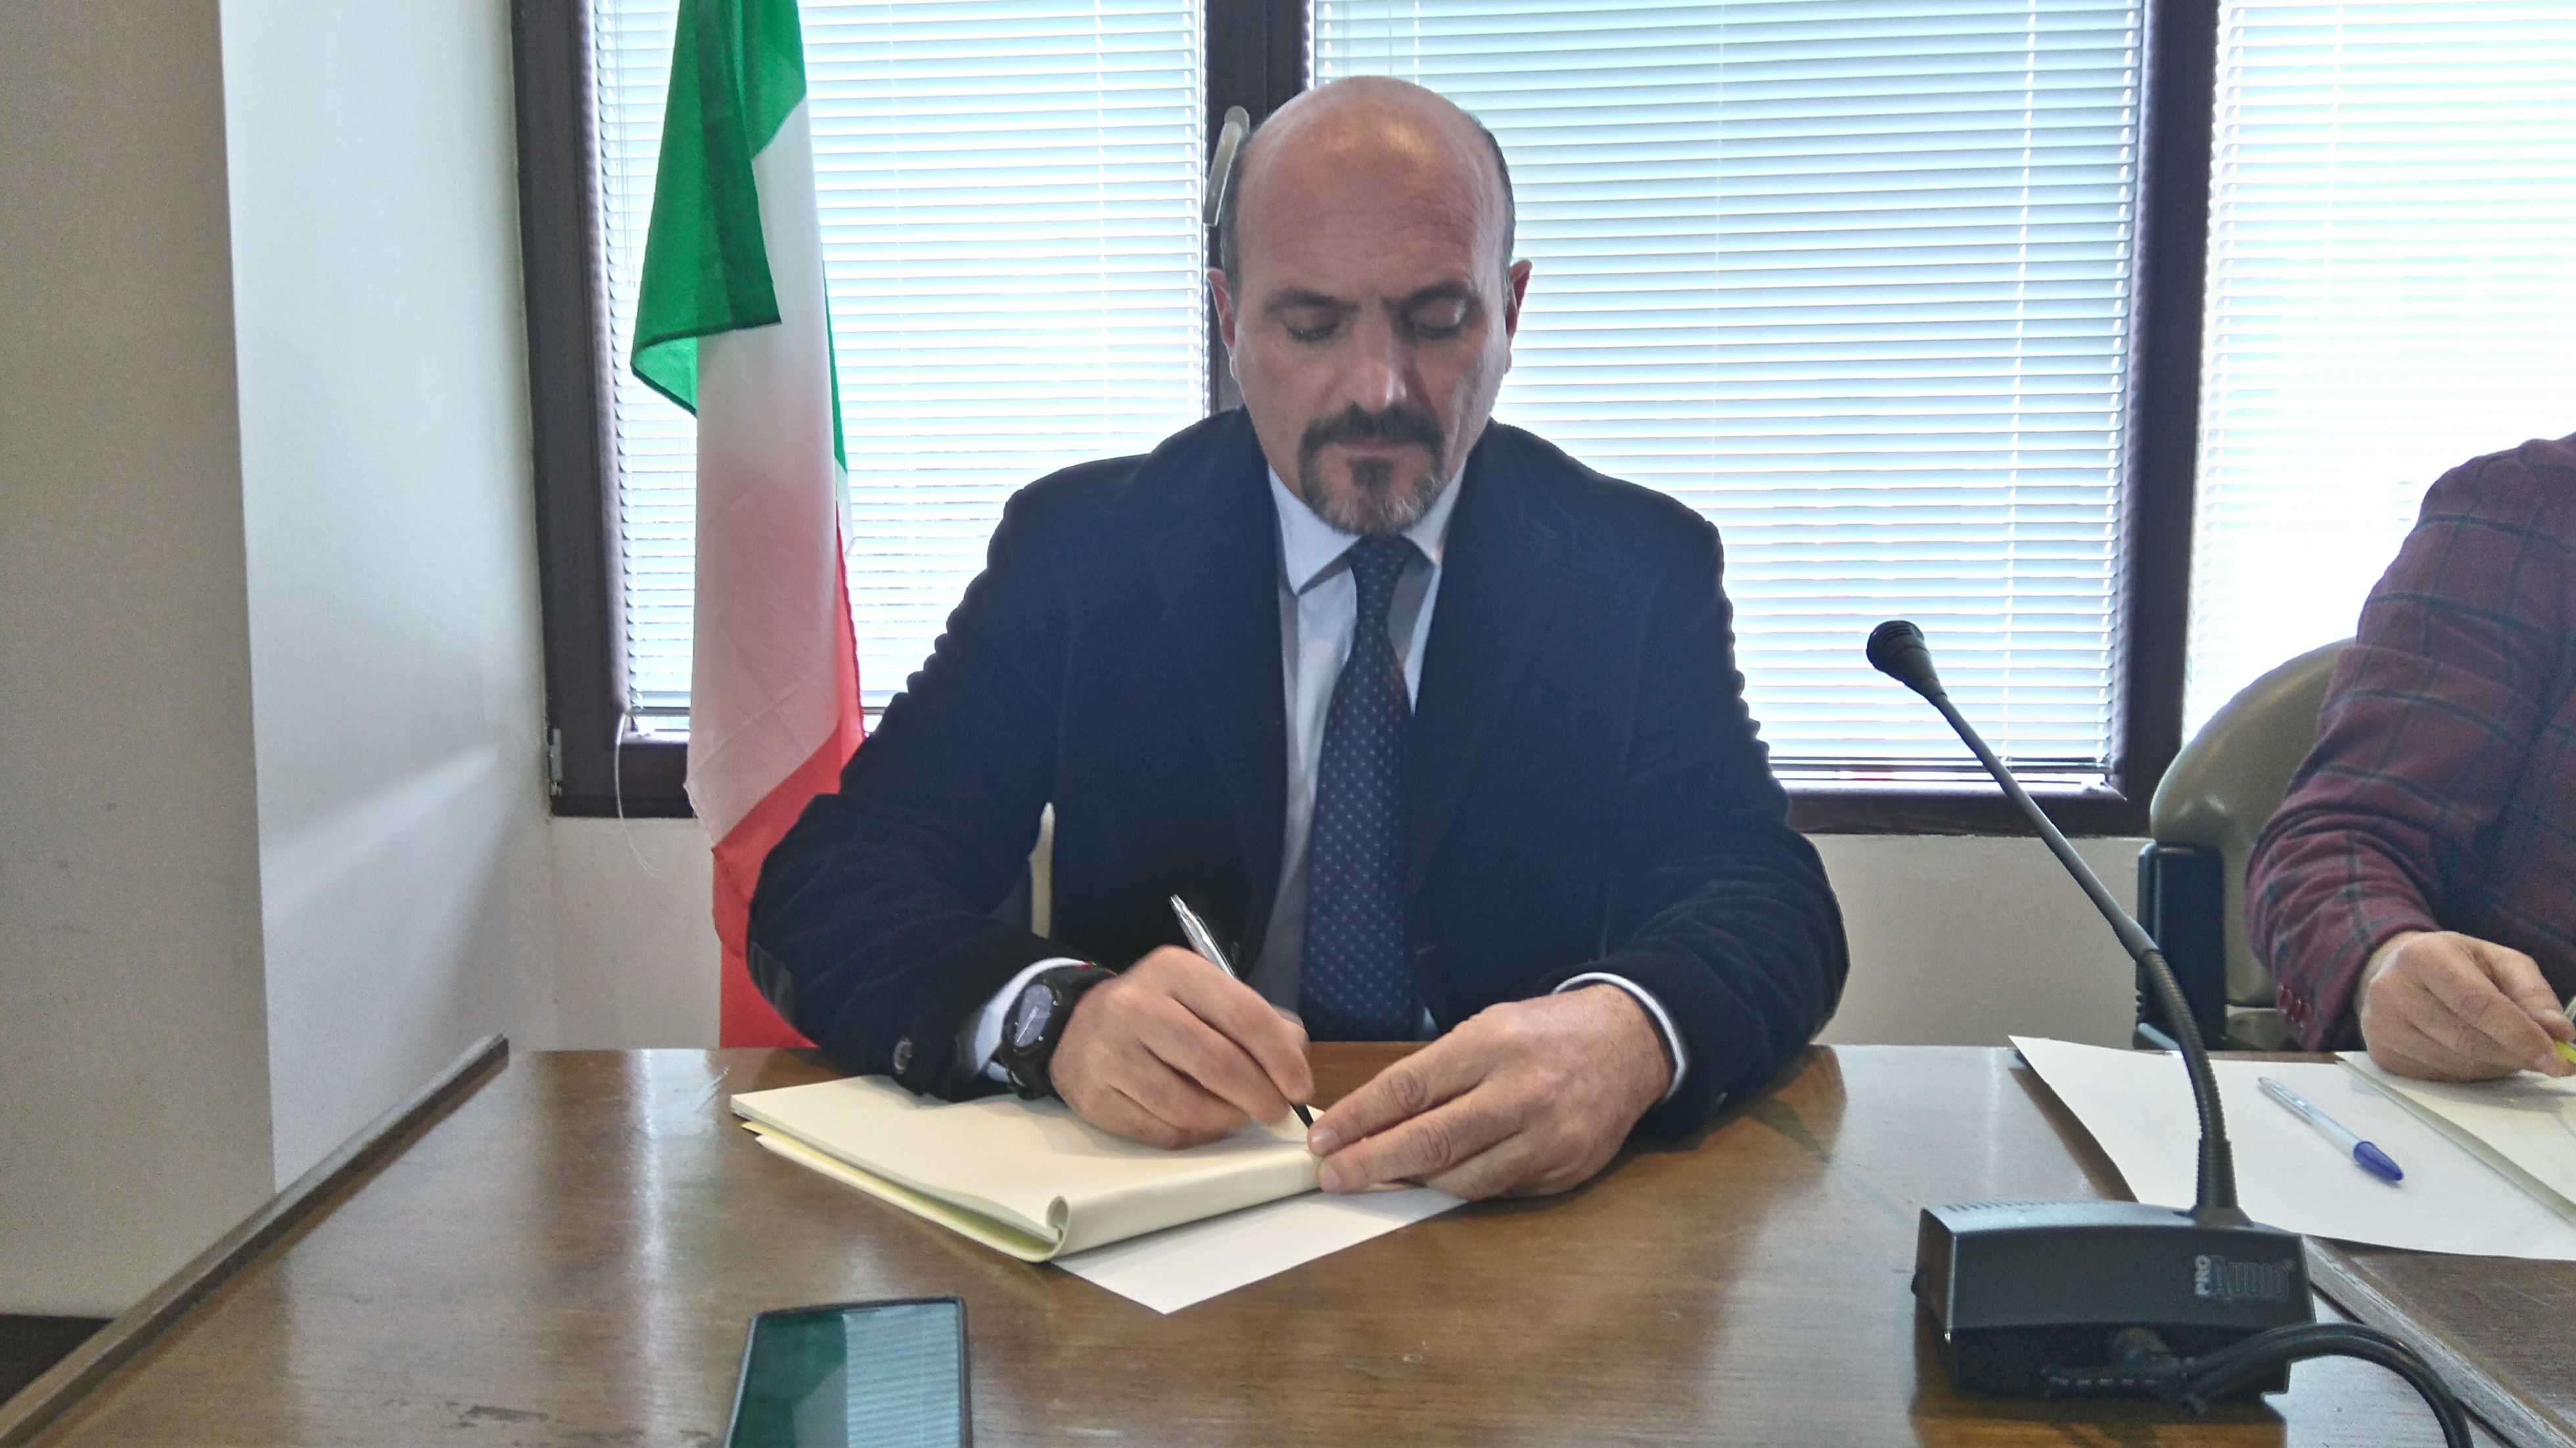 Divieto dimora sindaco Ugo Pugliese Crotone: Polizia, "accordo collusivo"